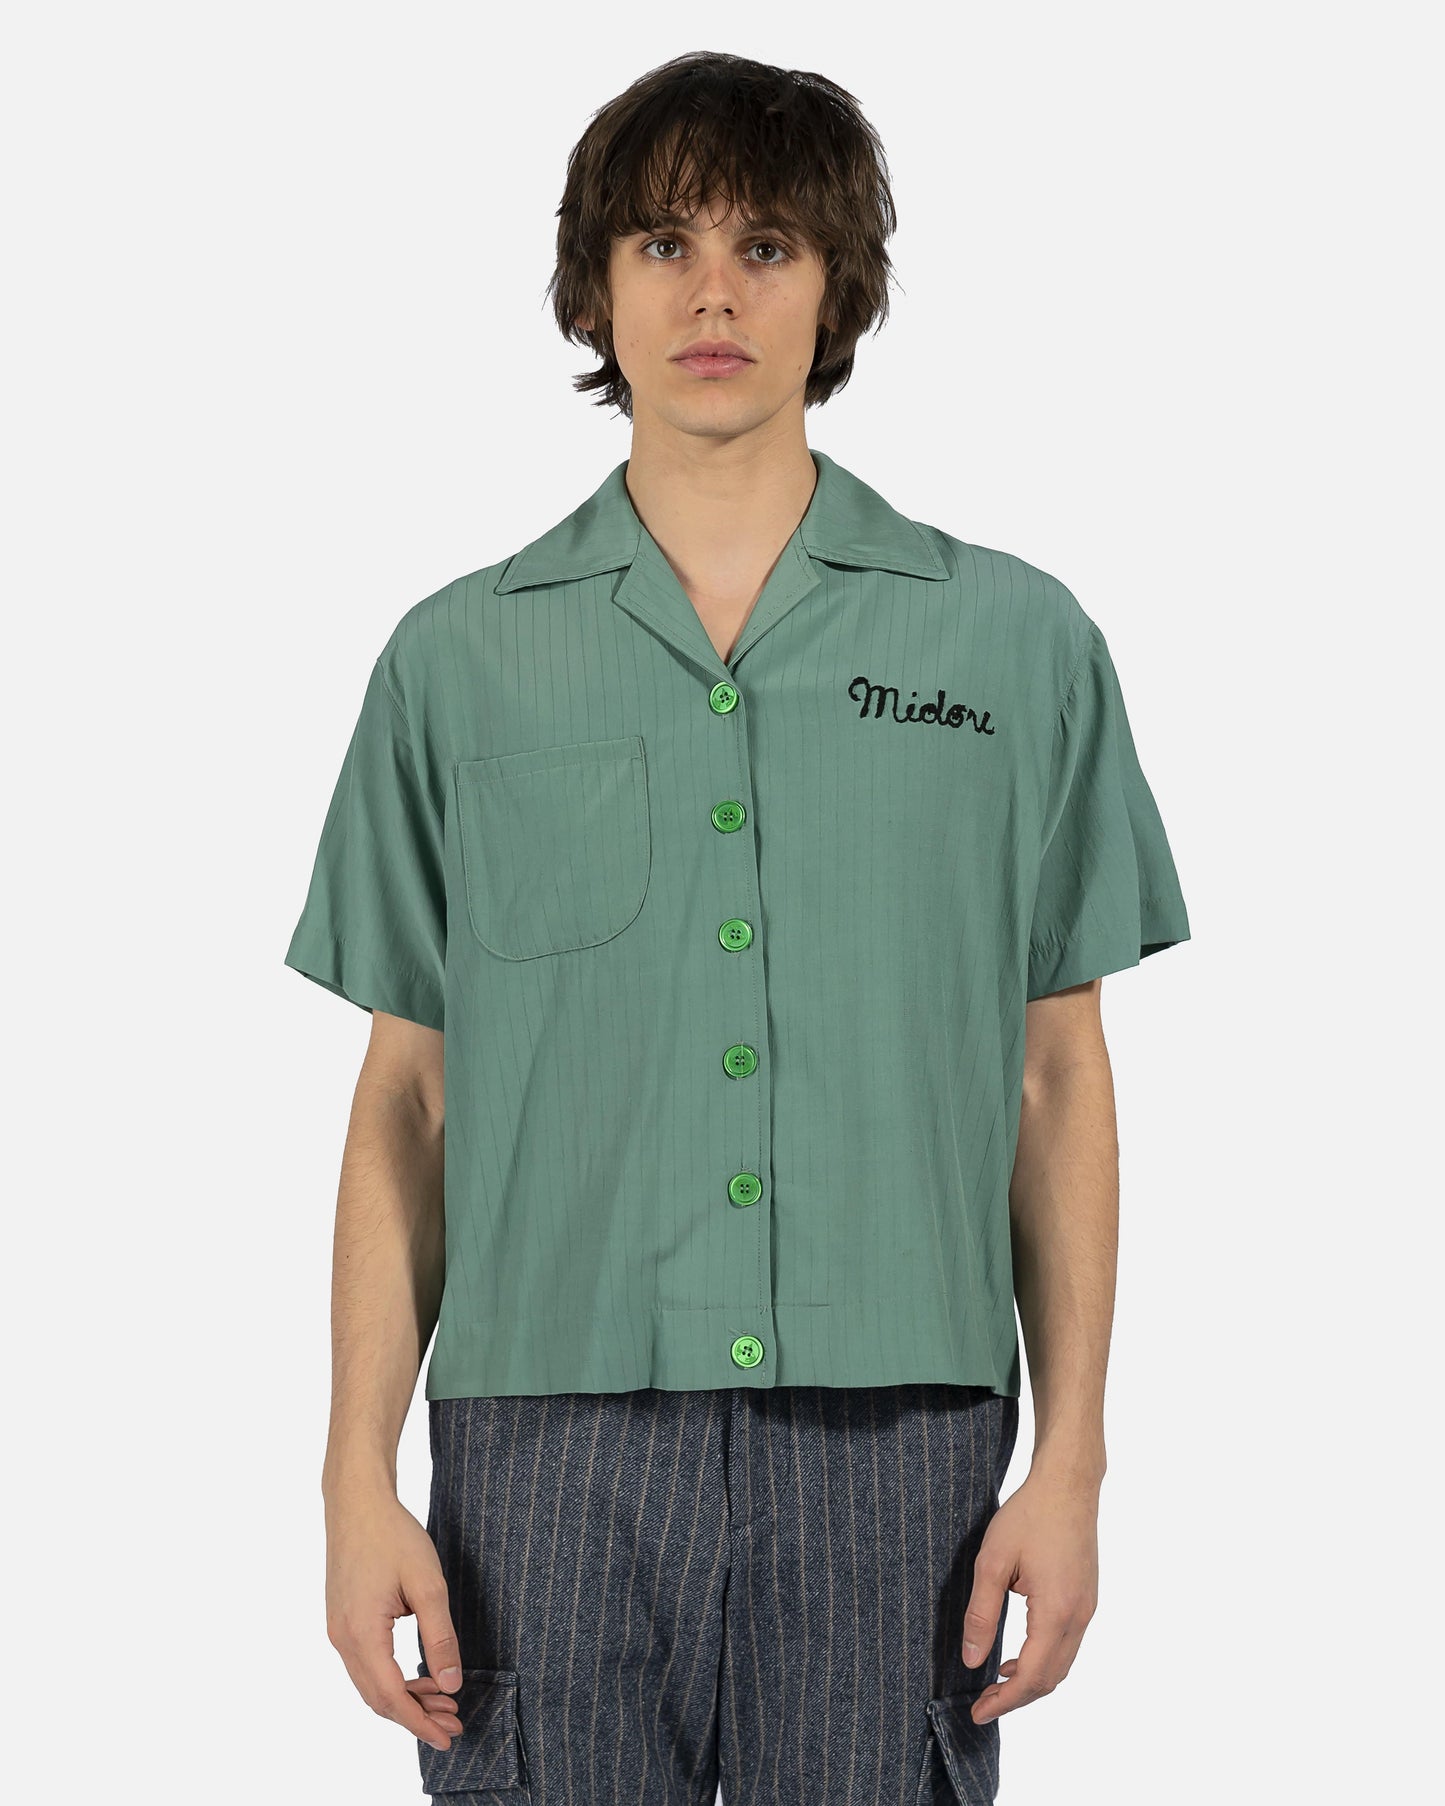 Midori Men's Shirts Gulag Bowling Shirt in Green